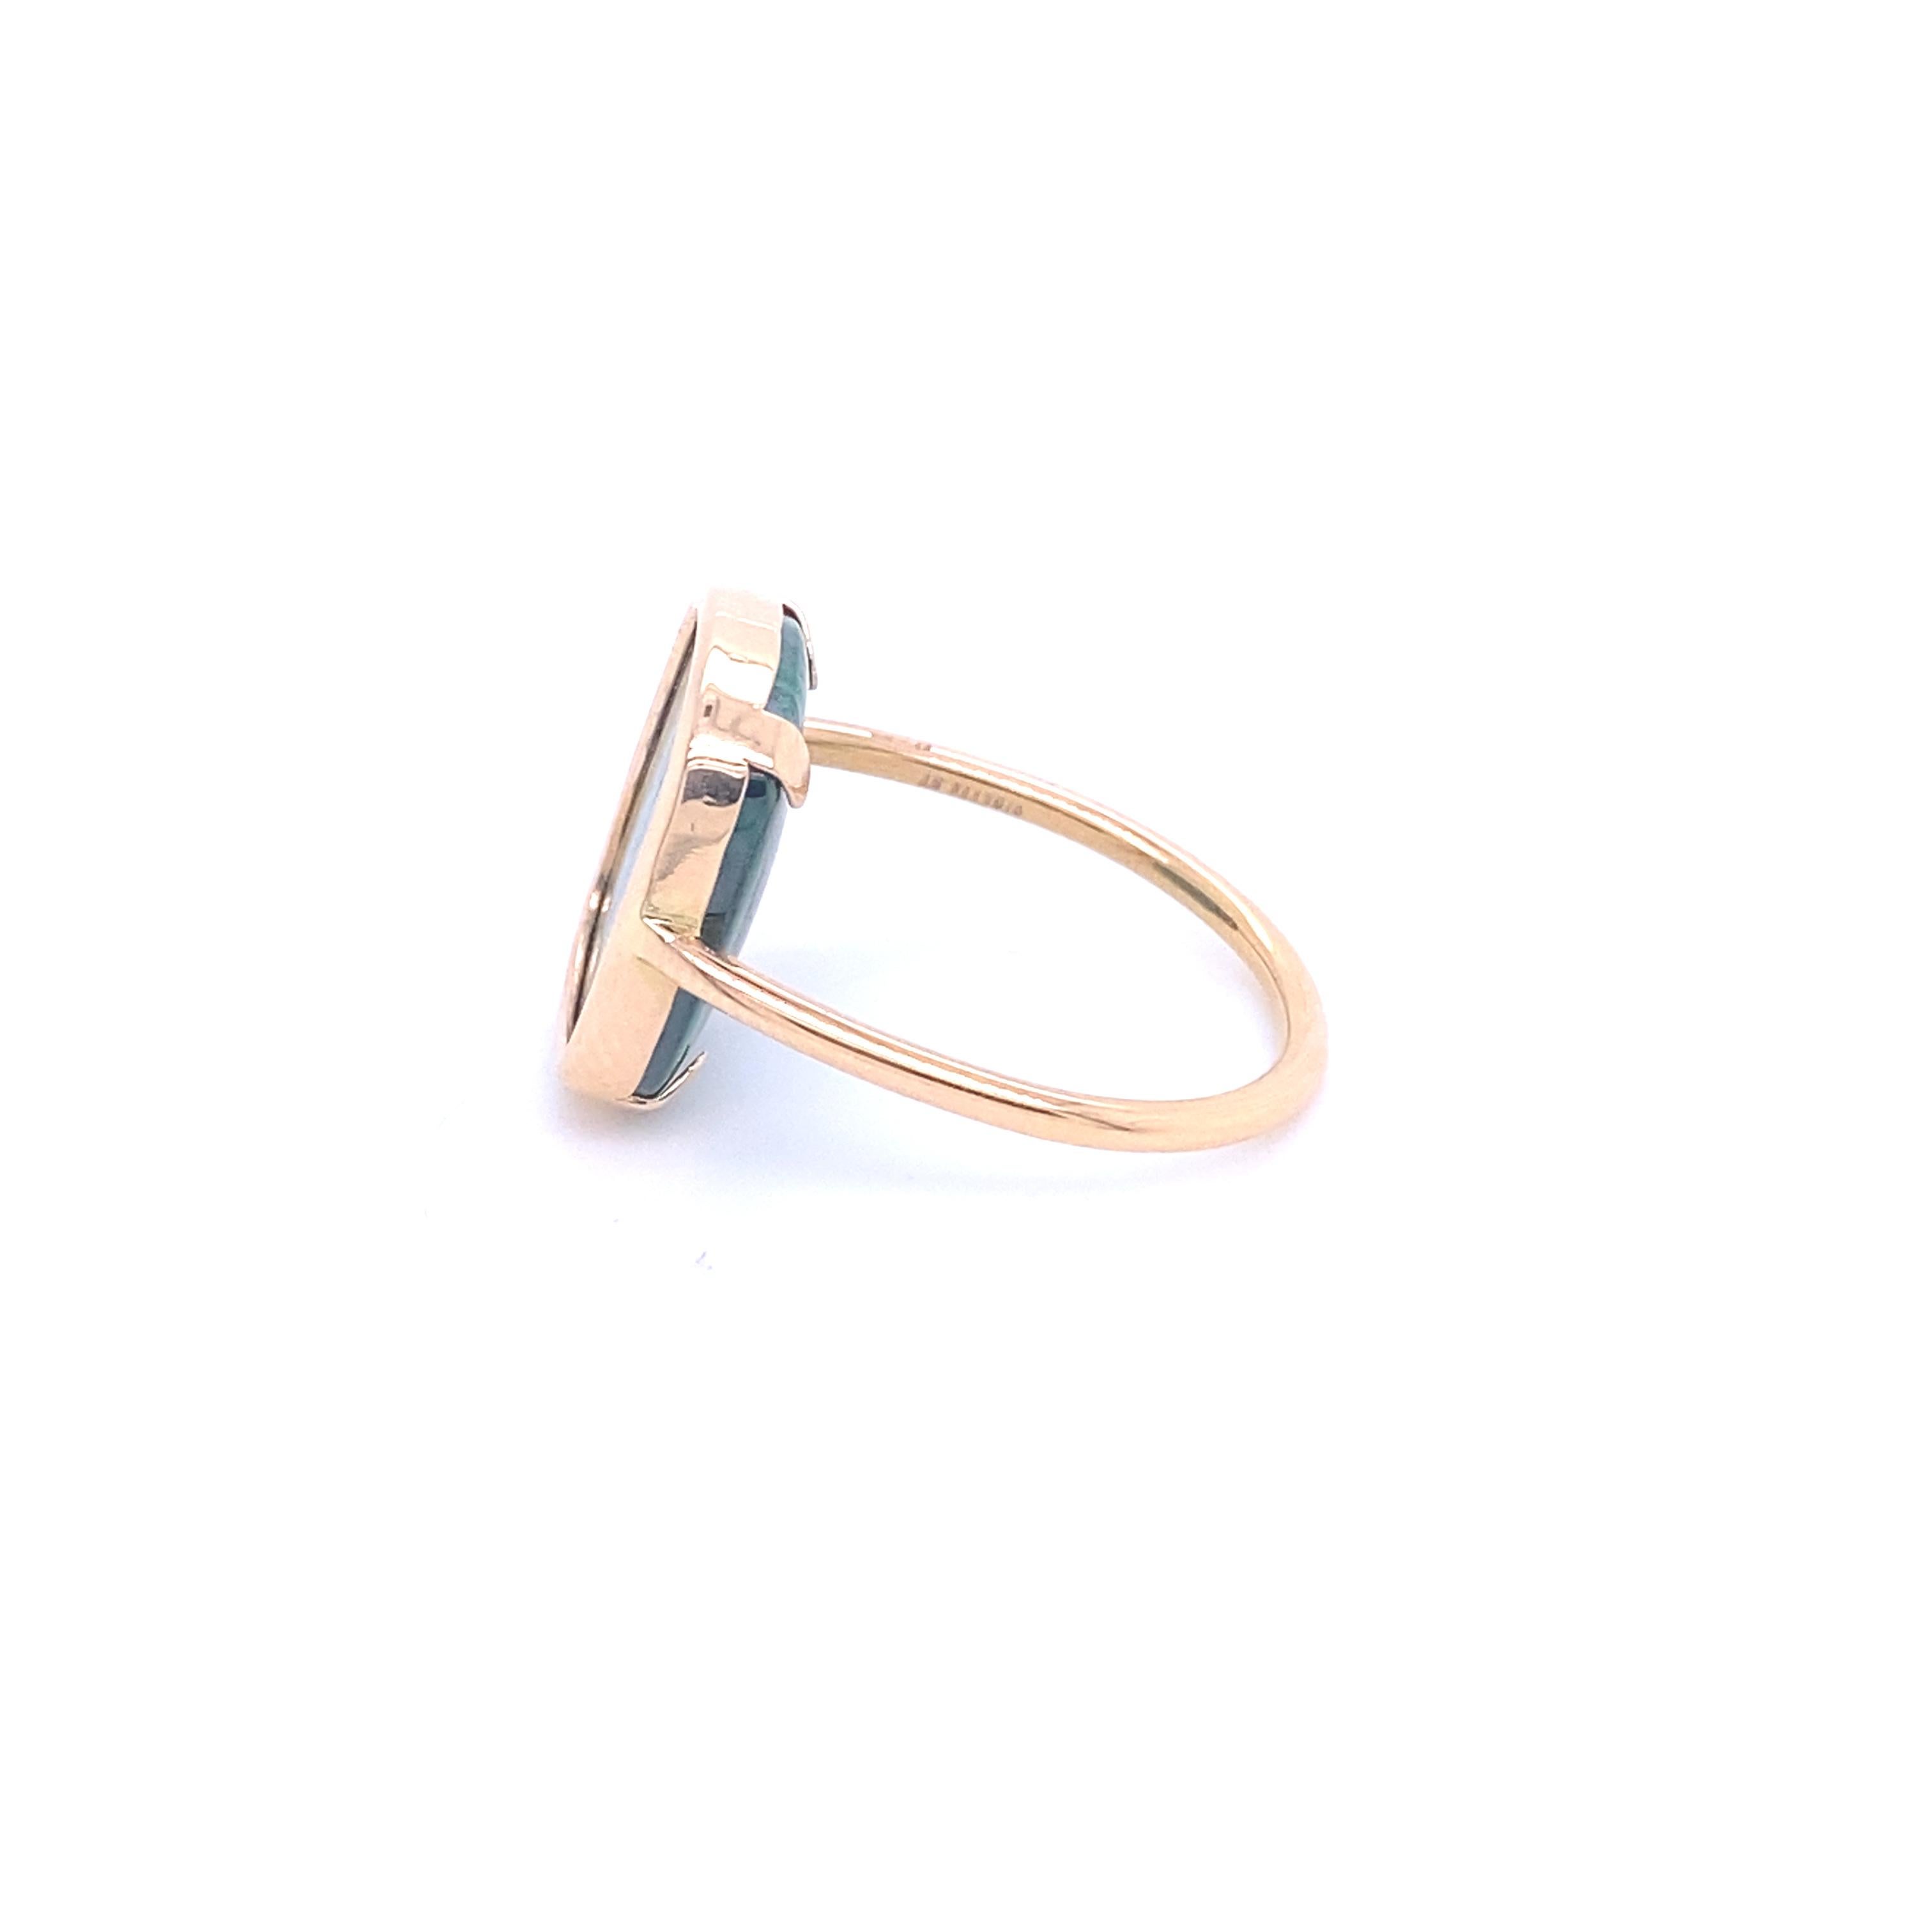 Entdecken Sie diesen prächtigen Ring aus 18 Karat Roségold mit einem wunderschönen Malachit. Sein originelles Design, das auf halbem Weg zwischen quadratisch und rechteckig liegt, verleiht diesem Ring einen einzigartigen Vintage-Touch.

Der für